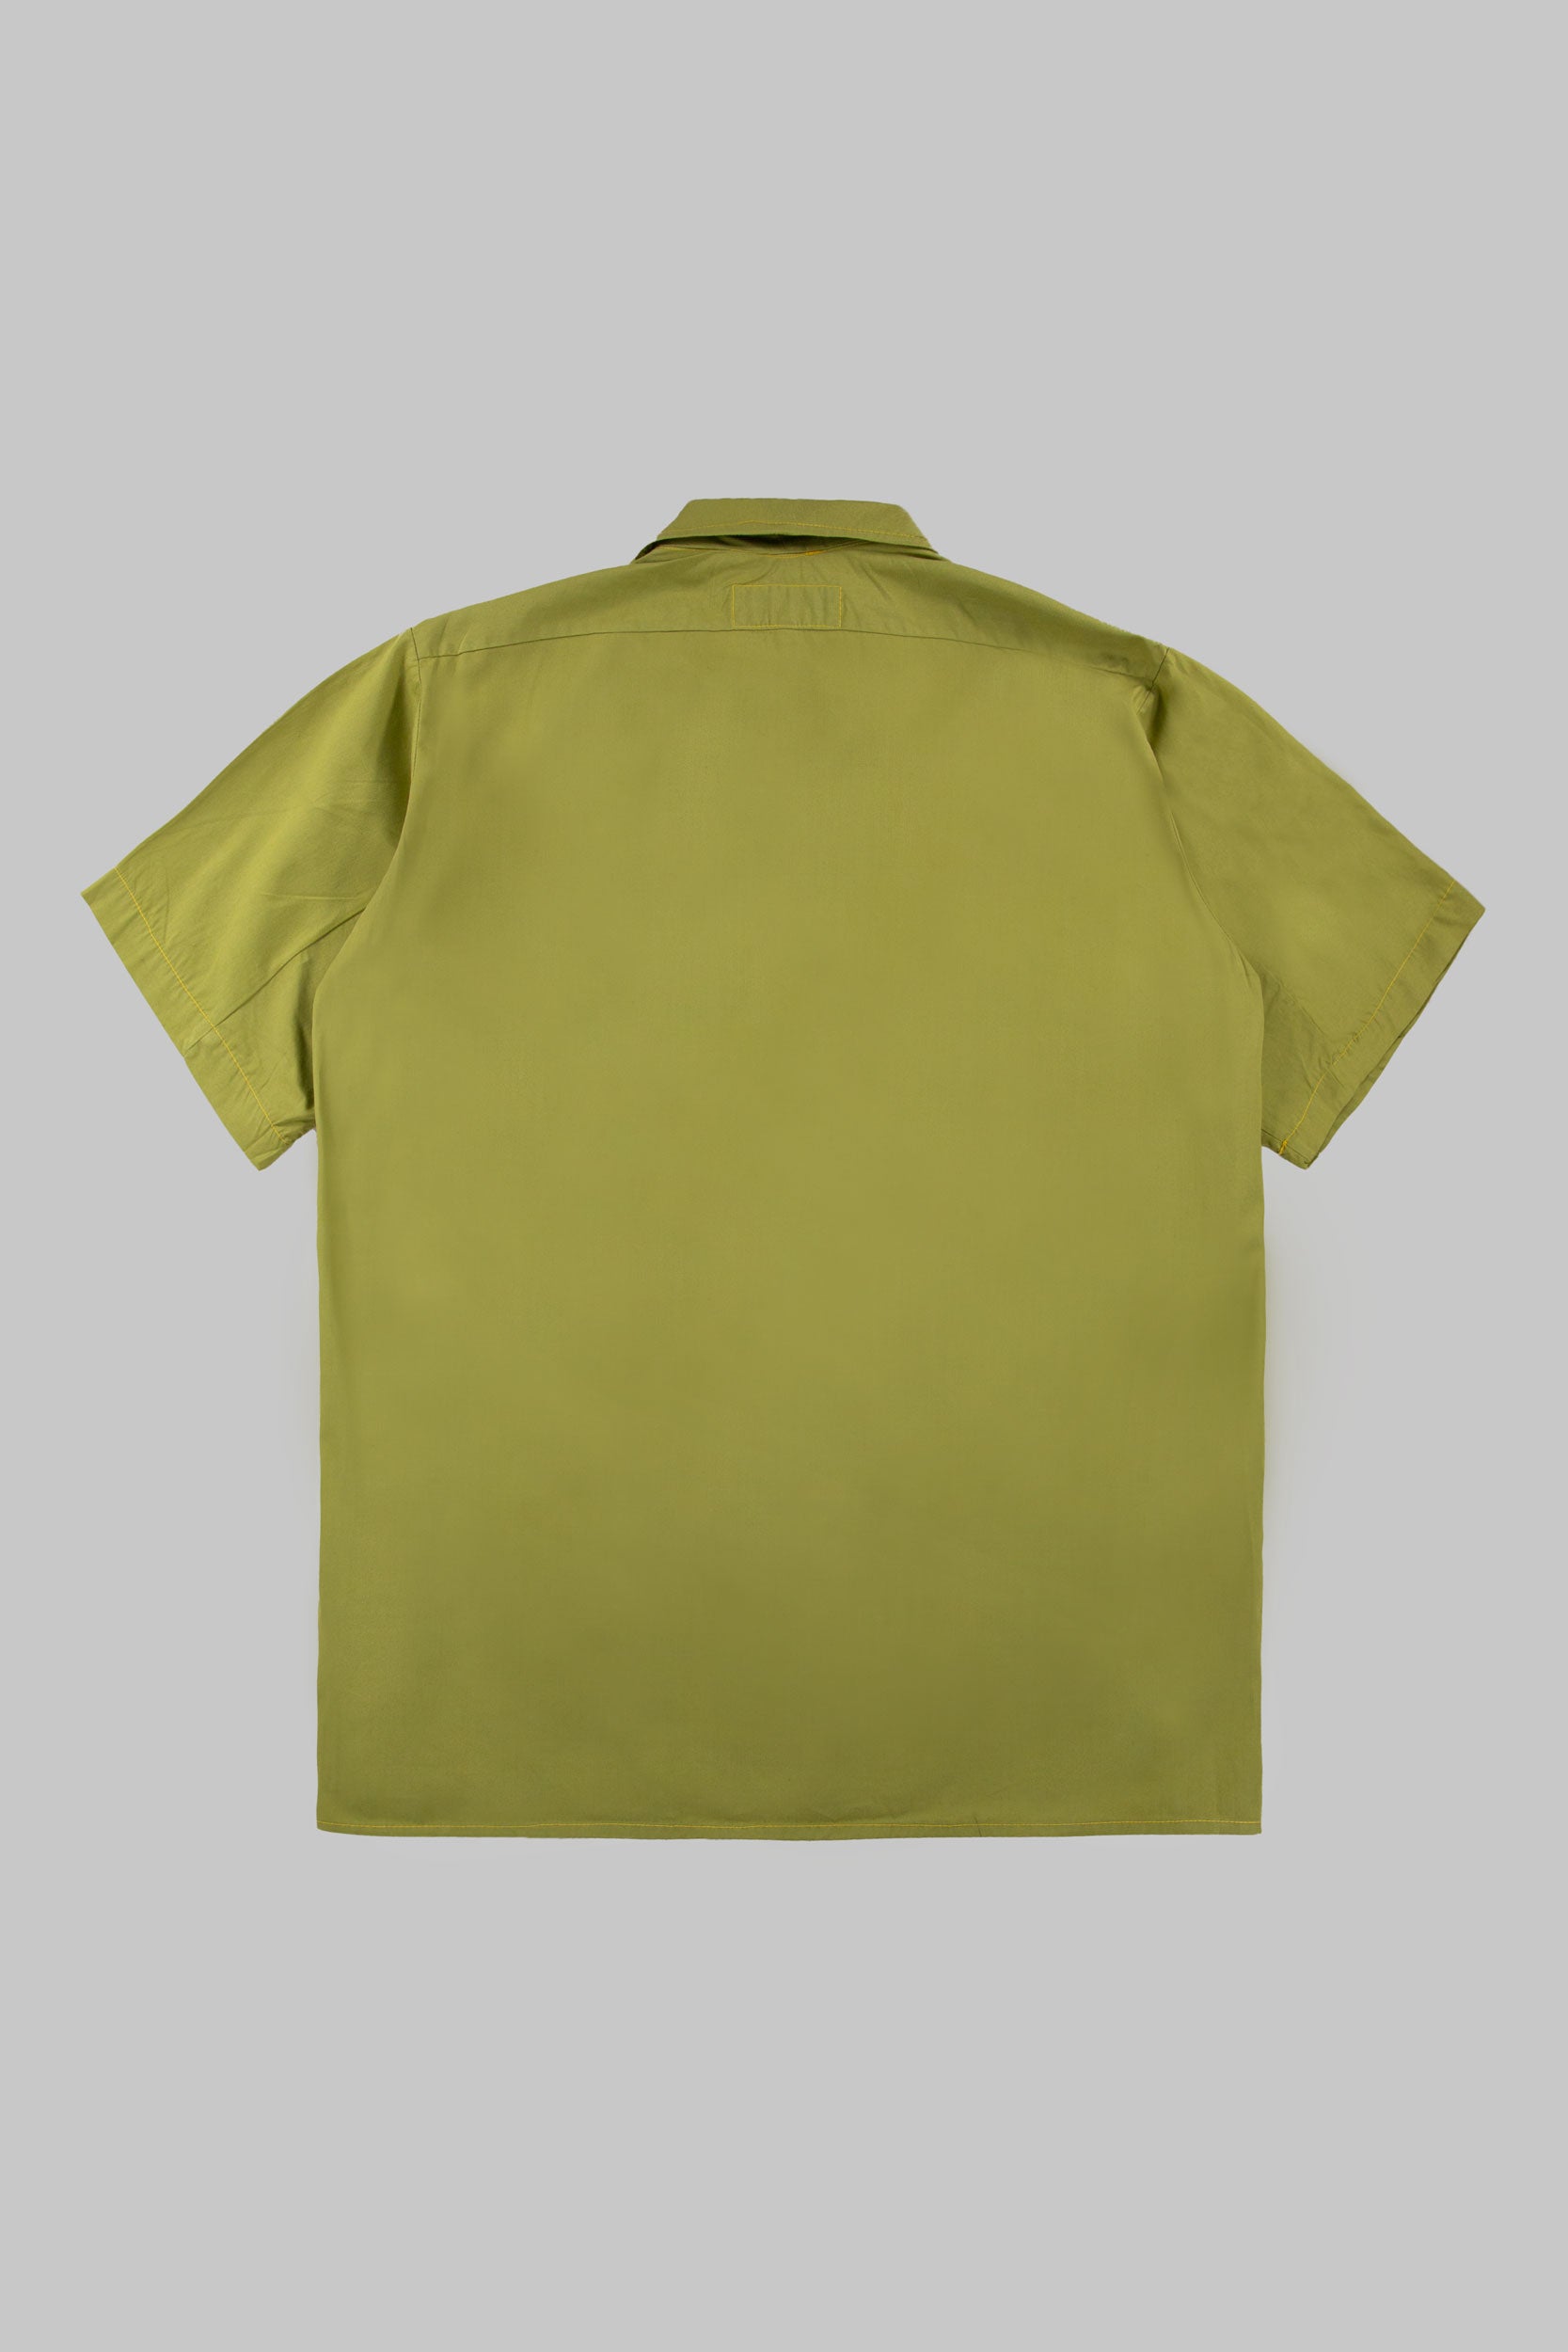 Tripps Shirt Mute Lime